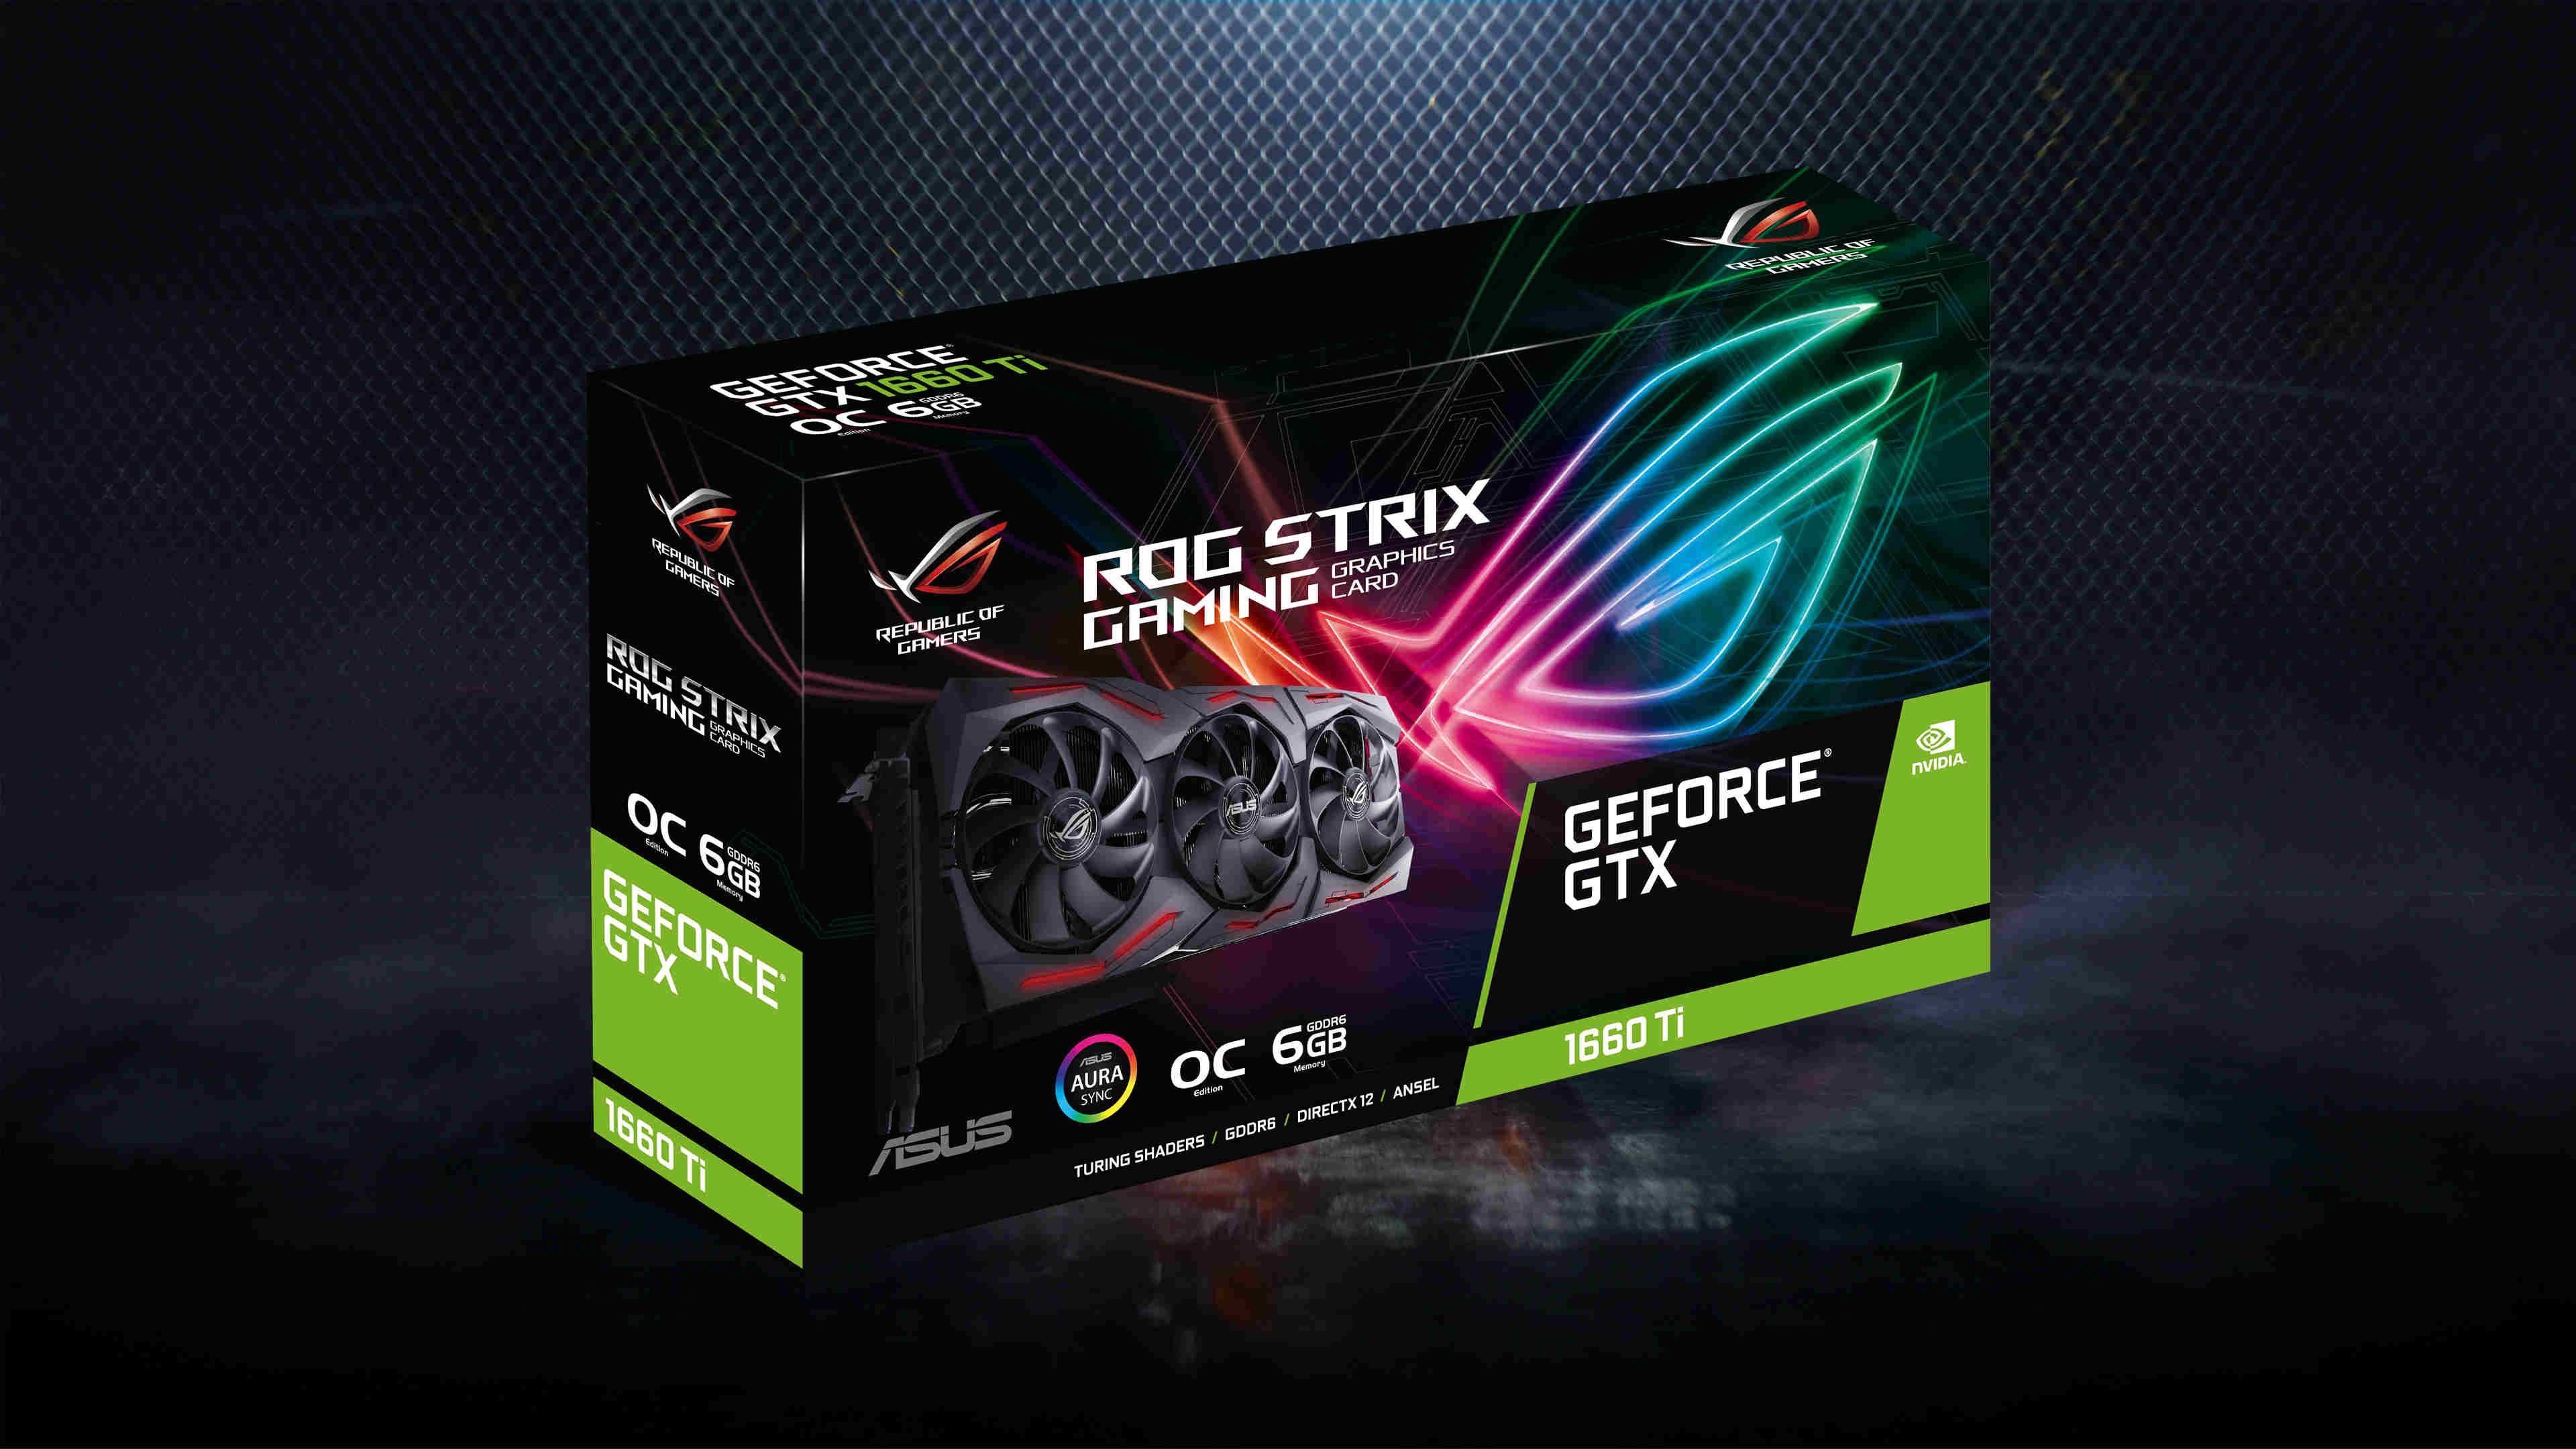 ASUS ROG Strix GeForce GTX 1060 Ti